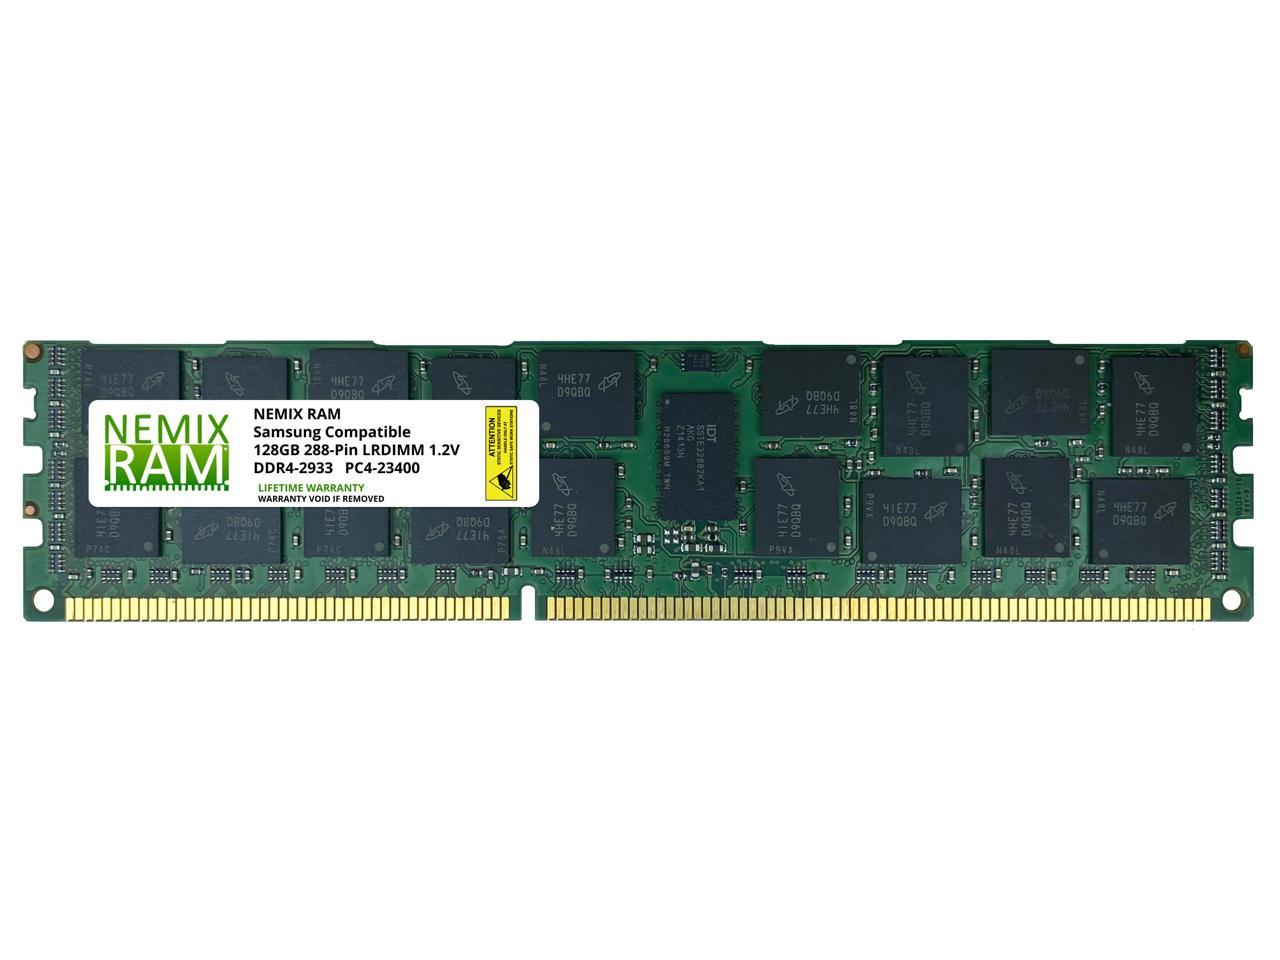 【すので】 NEMIX RAM 12GB (8X64GB) DDR4-2933 PC4-23400 ECC RDIMM レジスタードサーバー